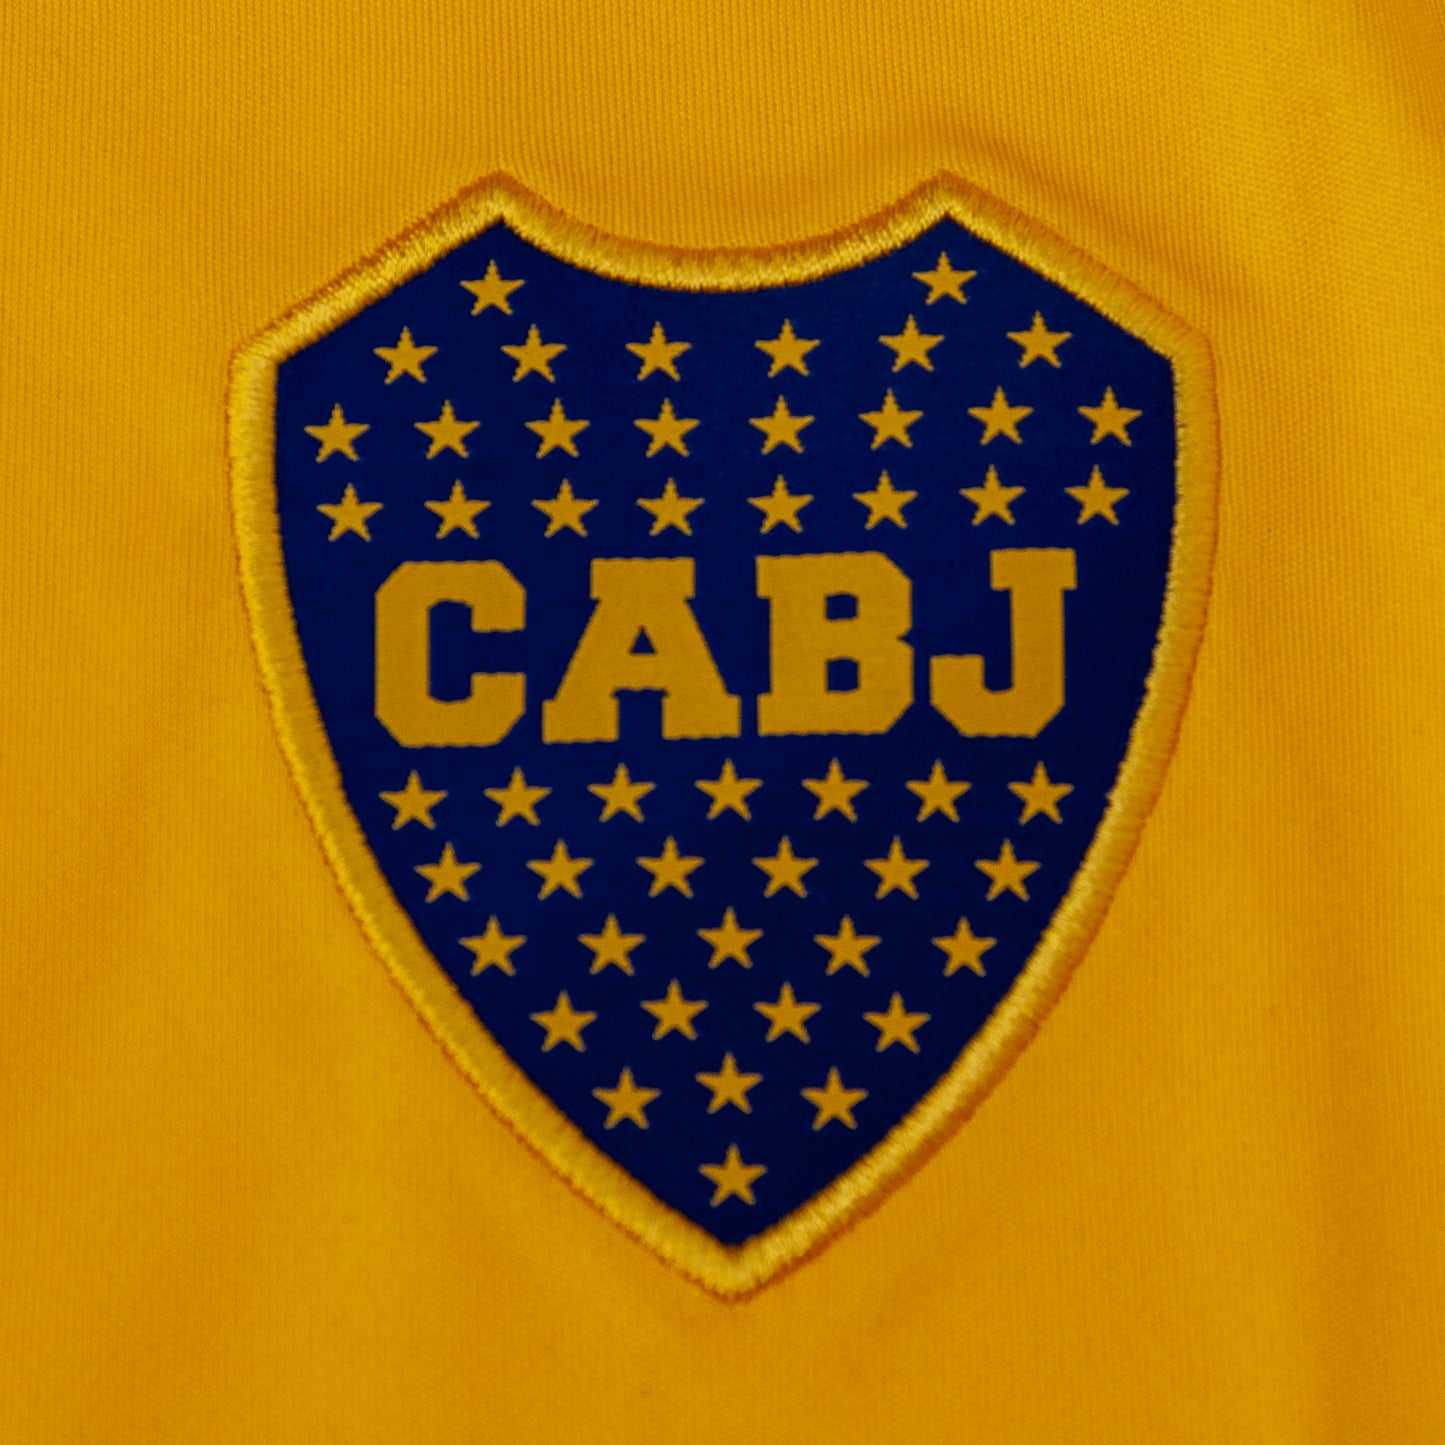 Boca Juniors 2021 Visitante